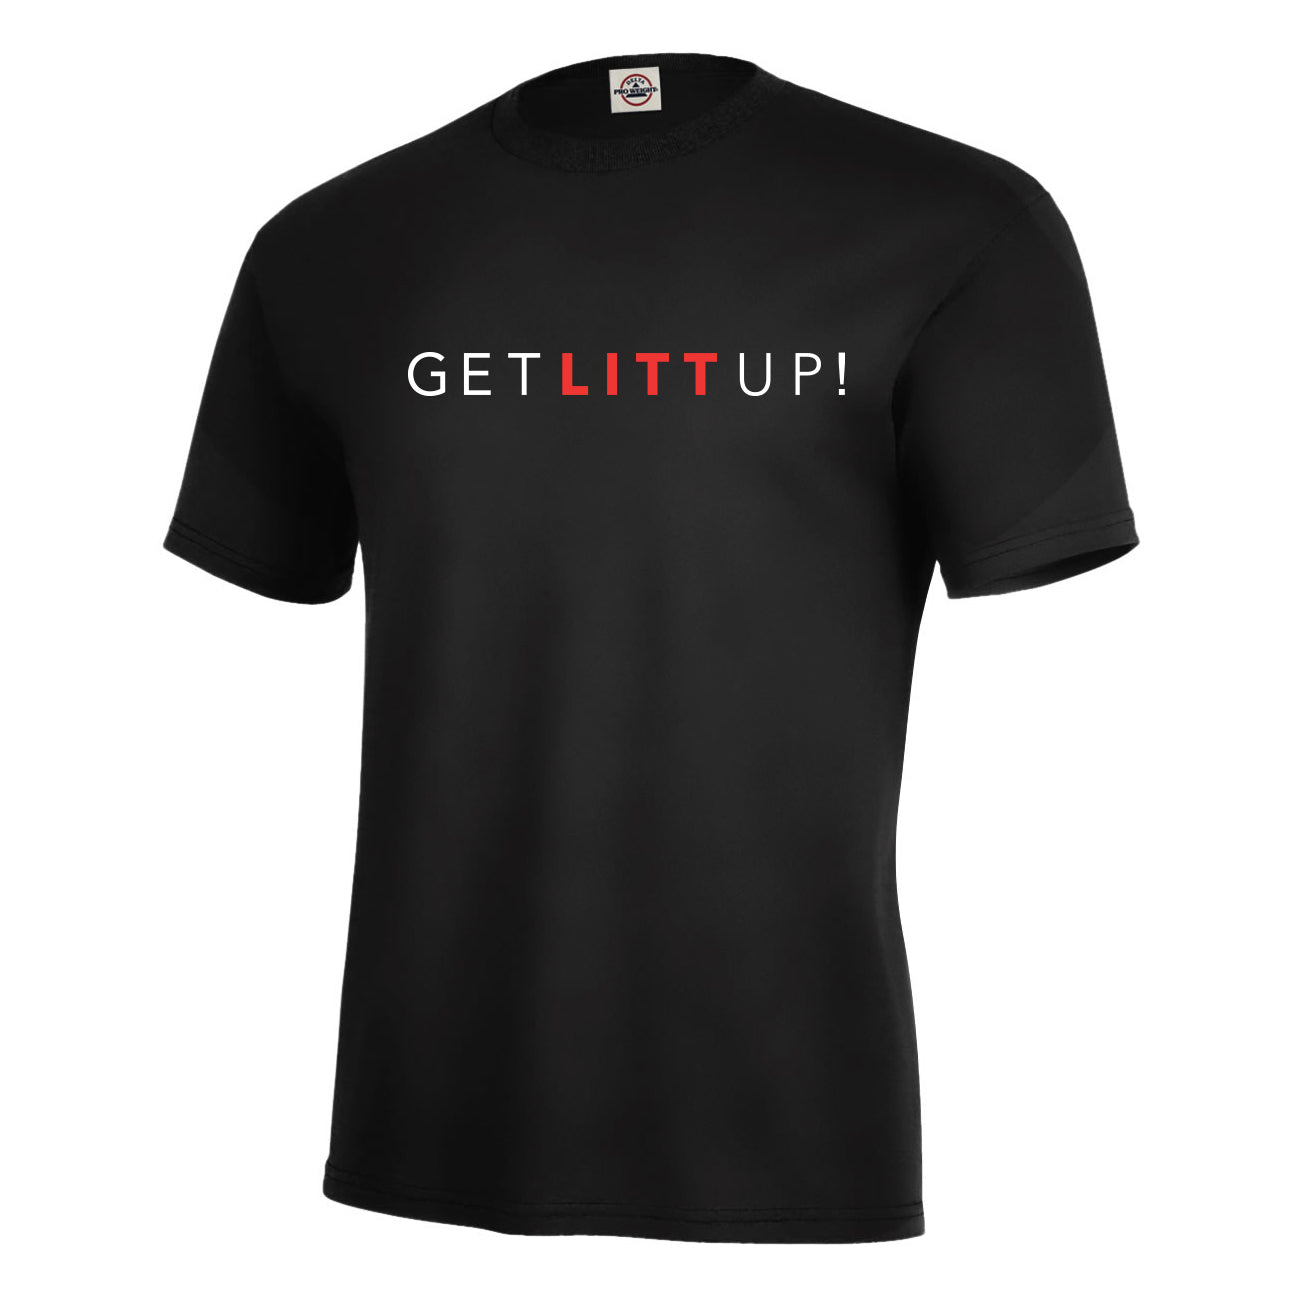 You just got LITT up : Louis Litt : Suits Quote Essential T-Shirt